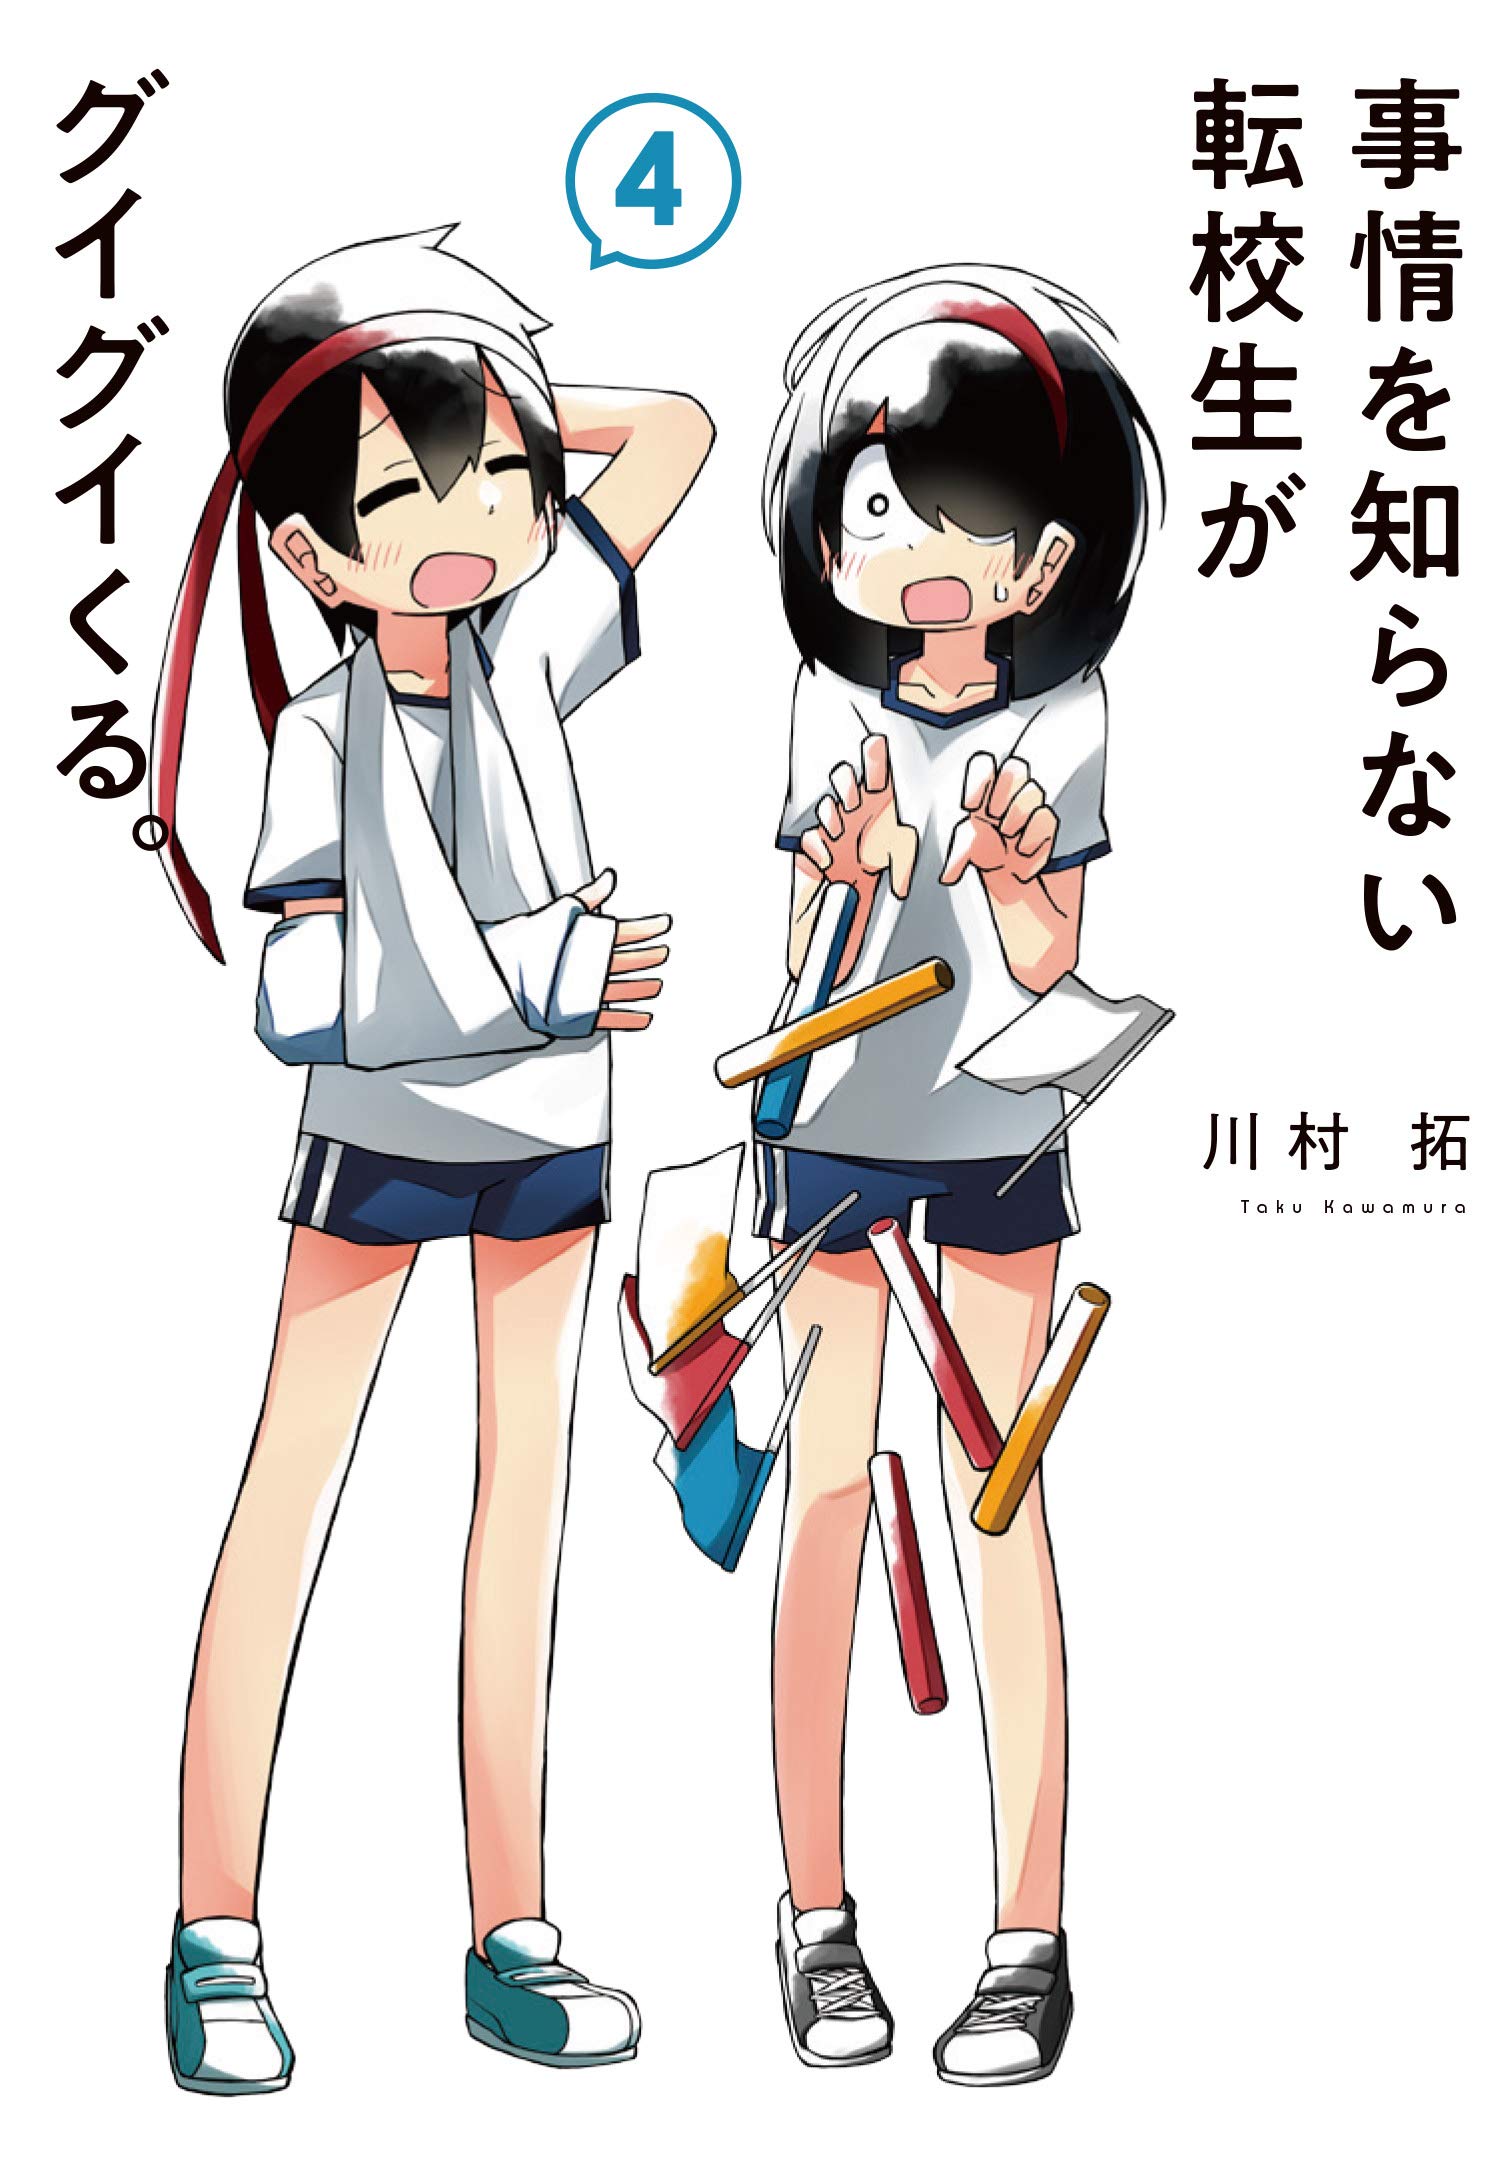 Jijou wo Shiranai Tenkousei ga Guigui Kuru – Mangá terá adaptação anime -  Manga Livre RS